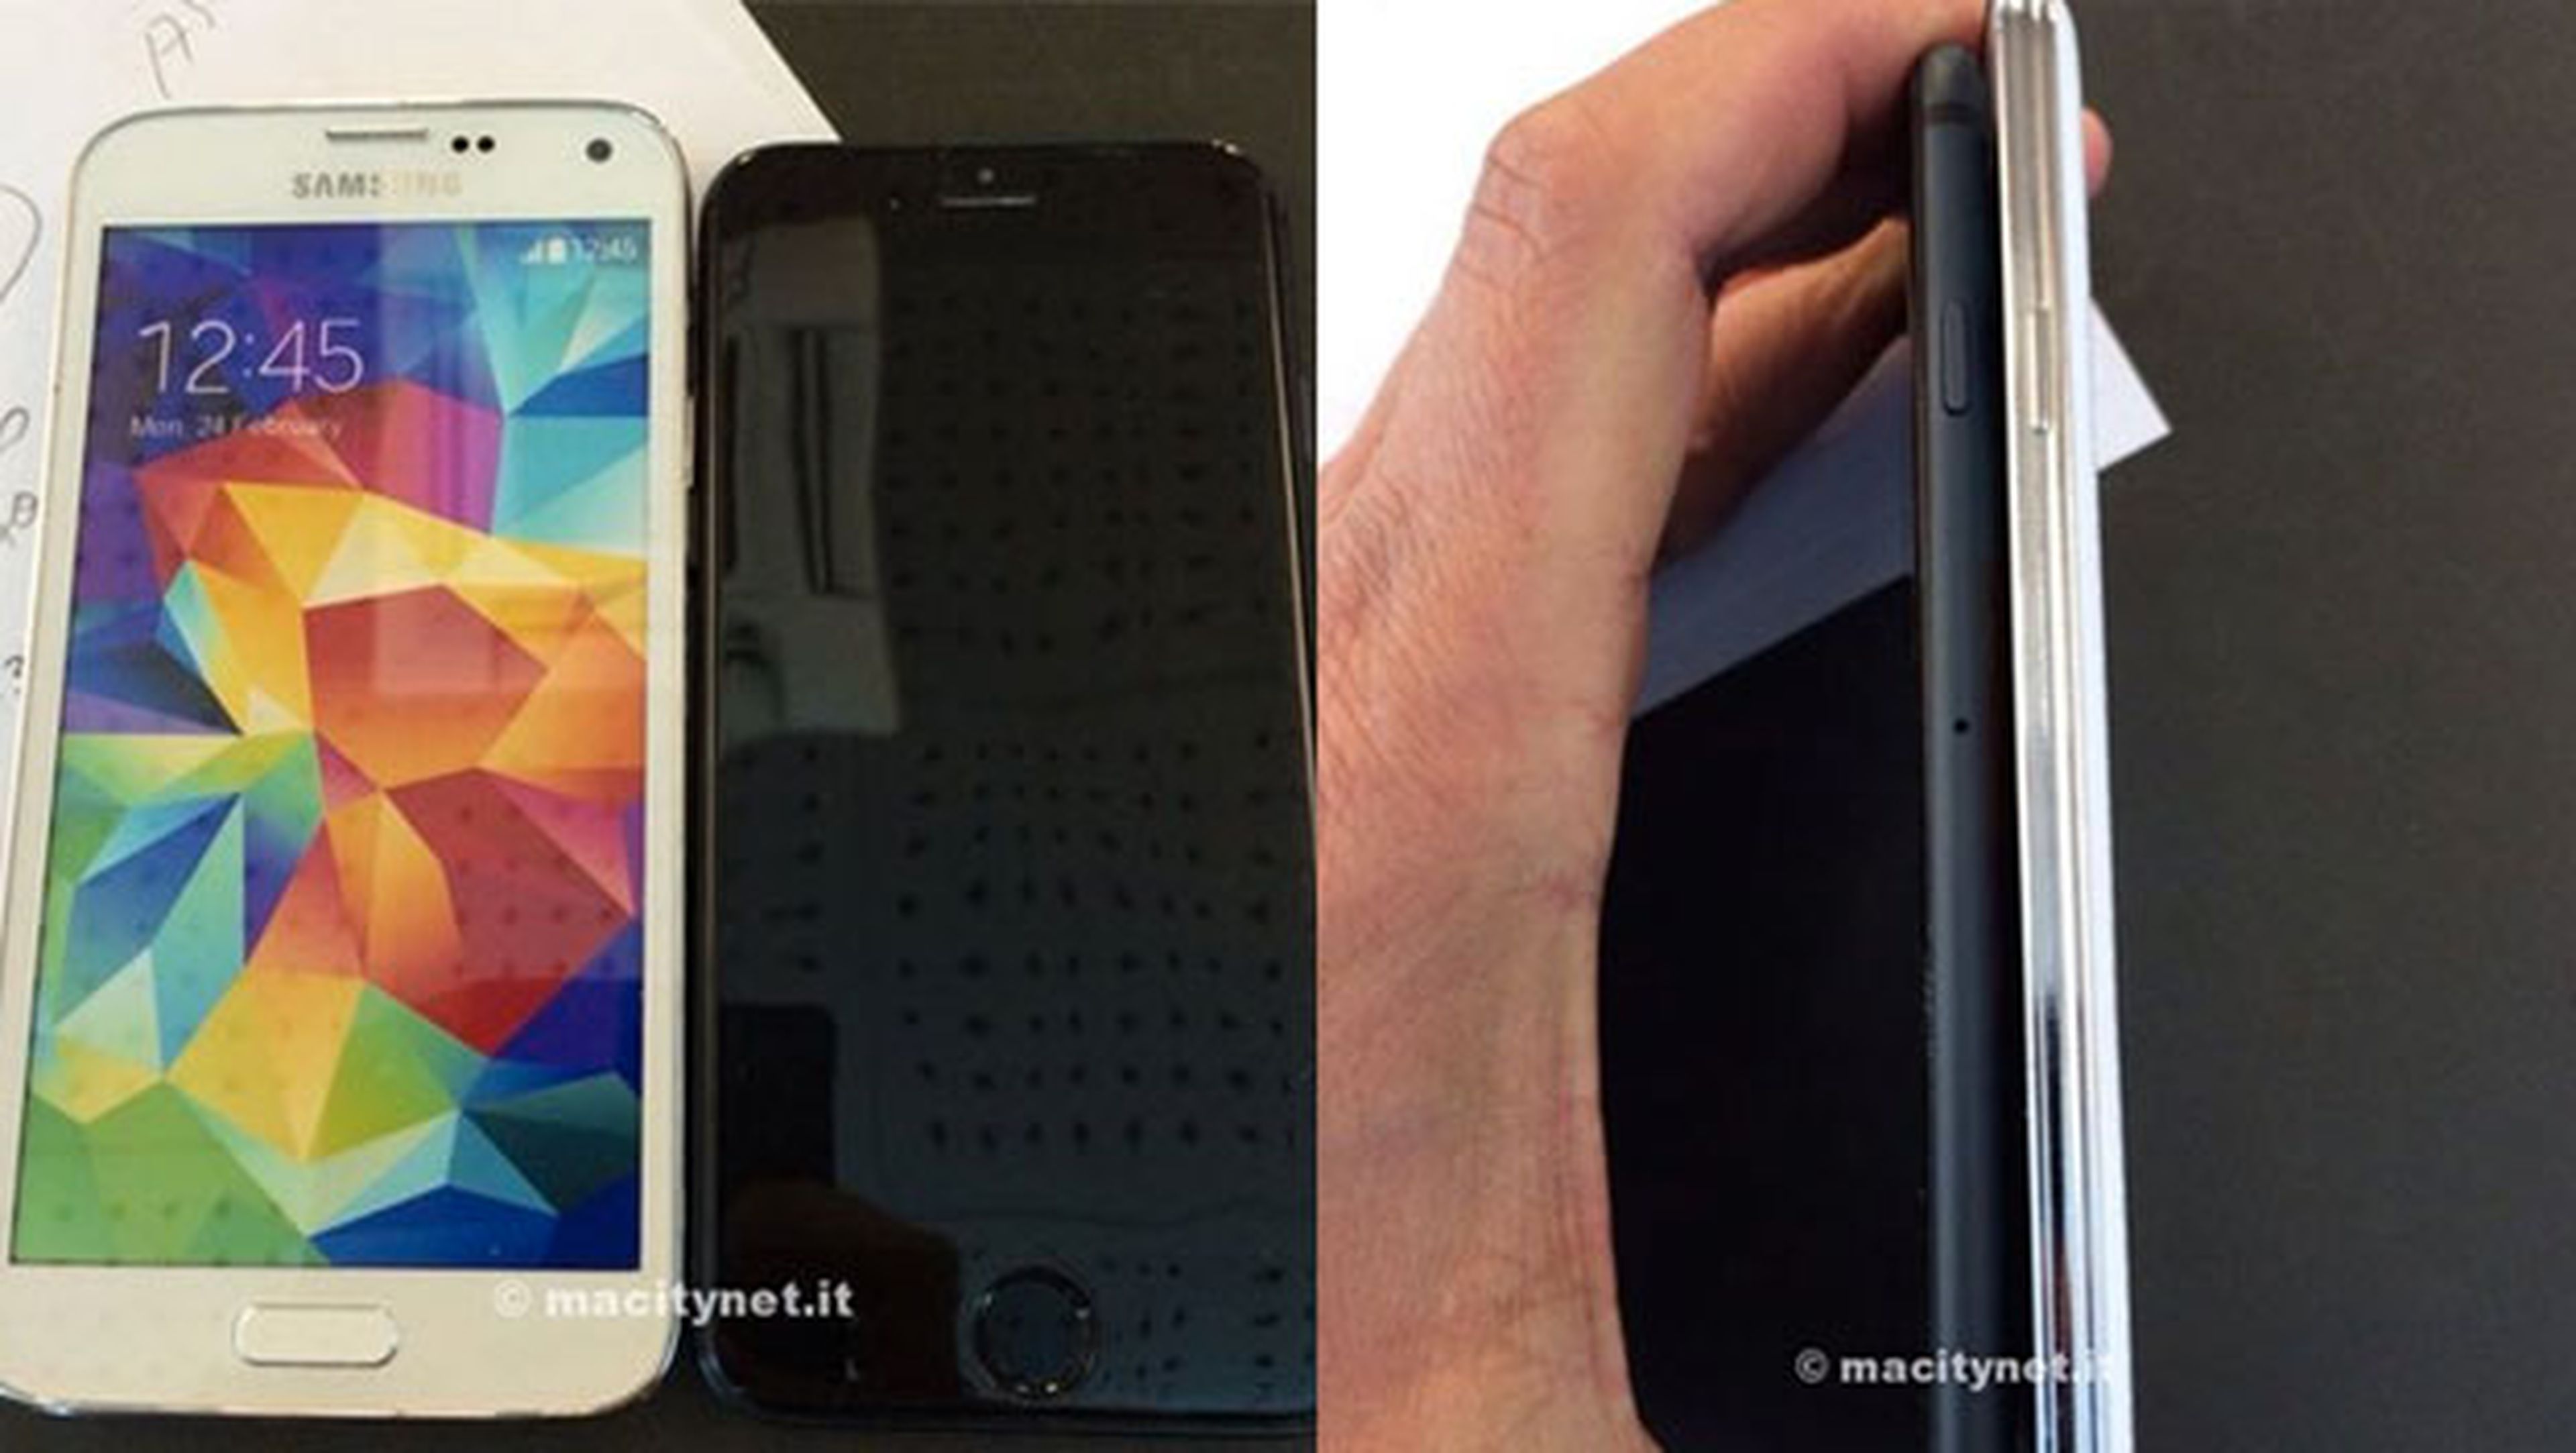 iPhone 6 y Samsung Galaxy S5